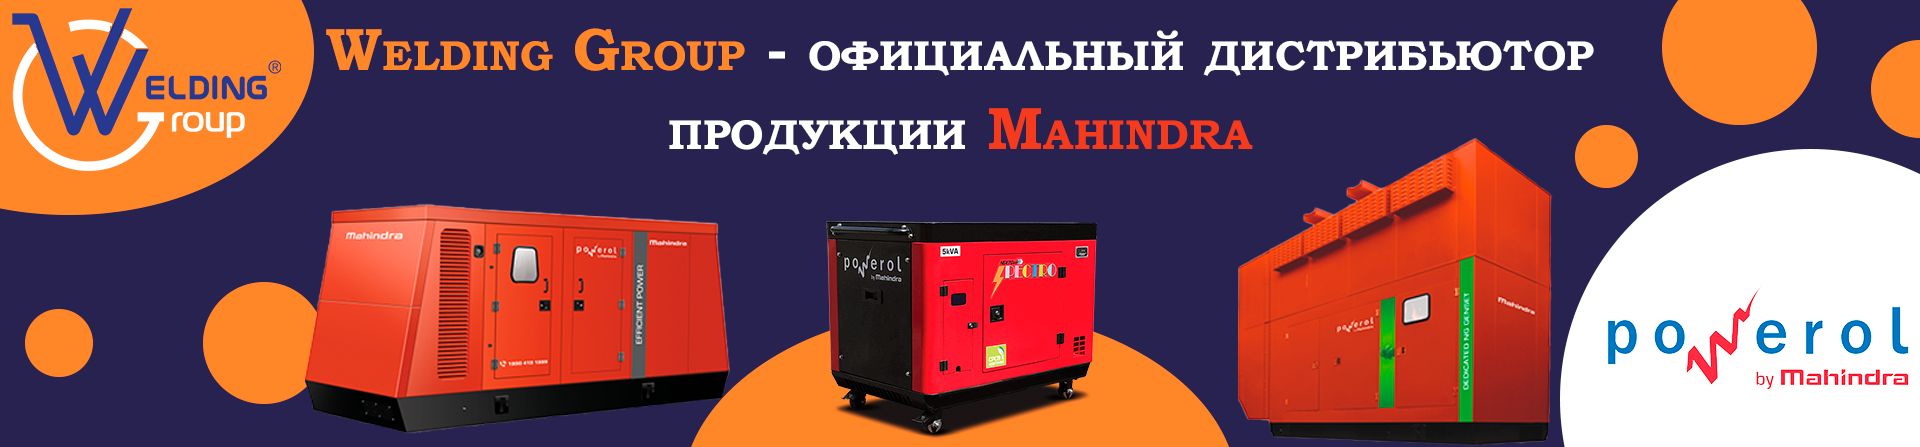 Welding Group - официальный дистрибьютор продукции Mahindra Powerol